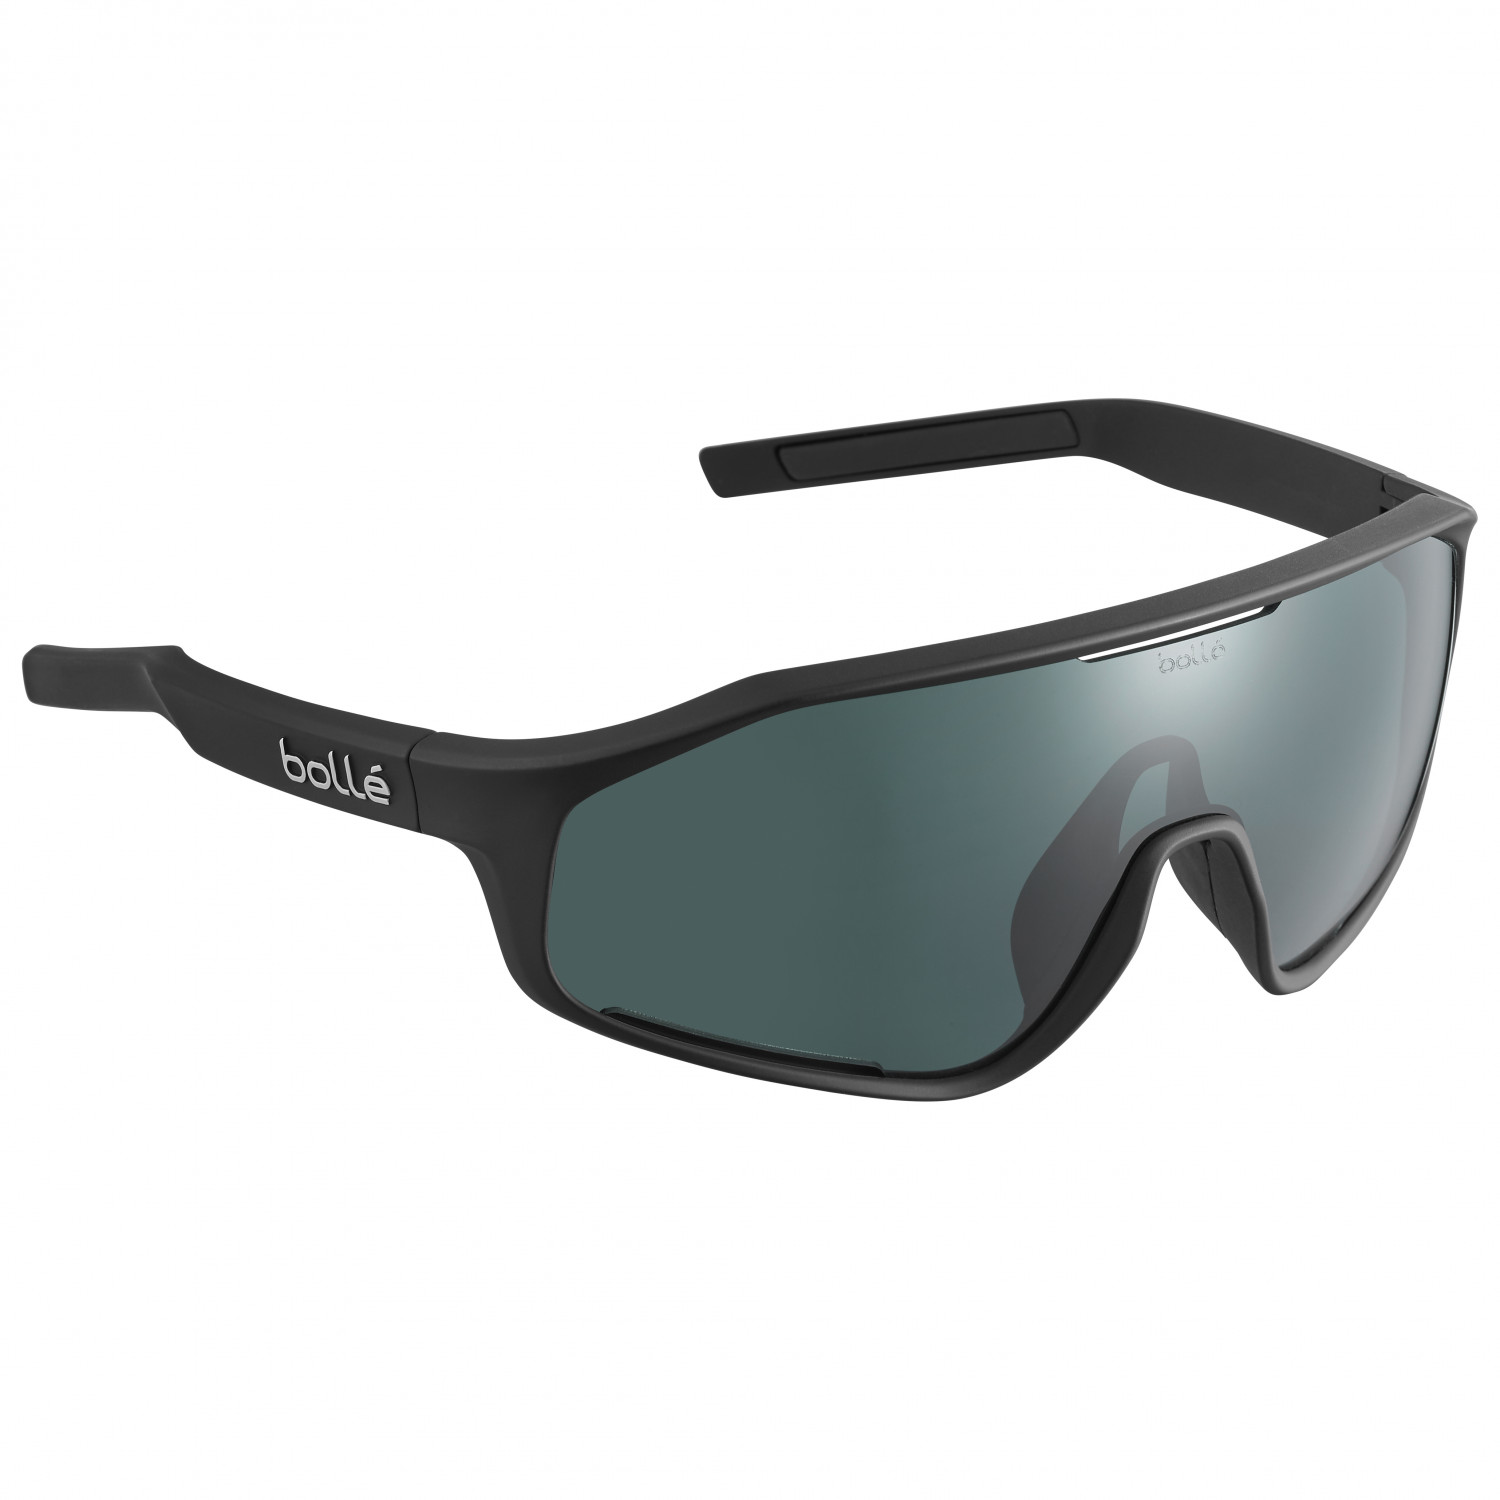 Велосипедные очки Bollé Shifter S3 (VLT 11%), цвет Black Matte